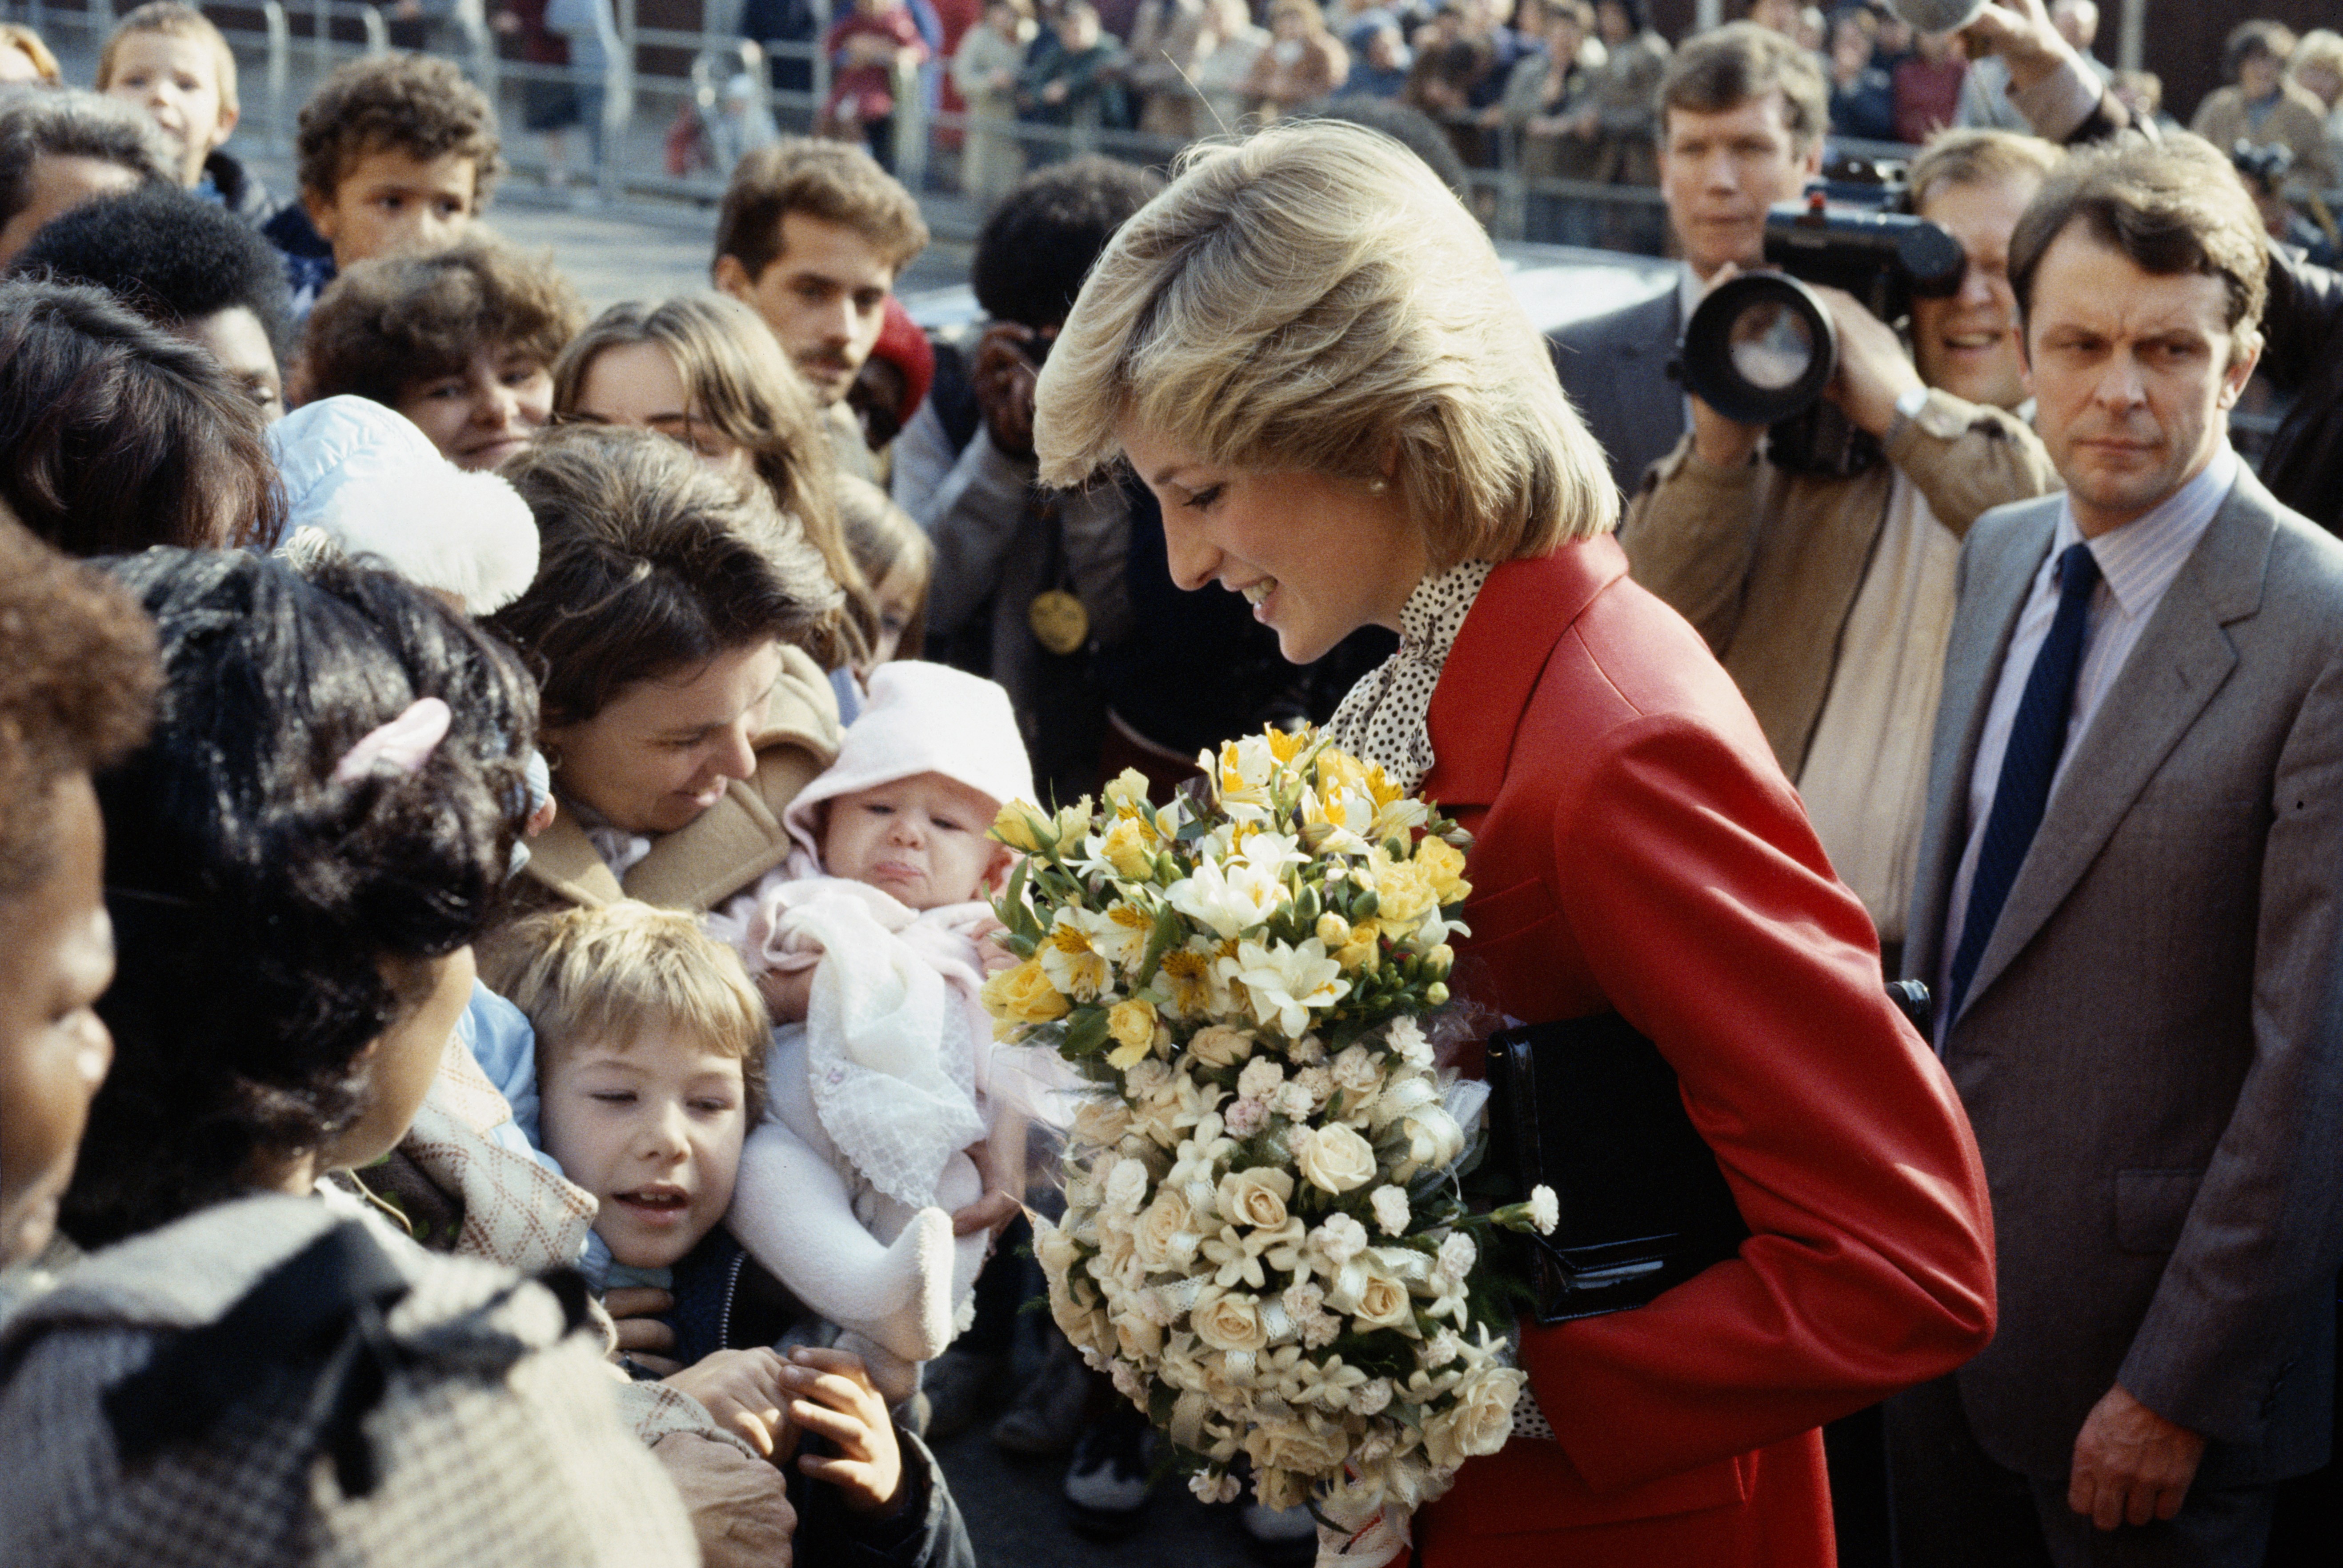 O contato próximo e autêntico com o público lhe rendeu o apelido 'princesa do povo' (Foto: Princess Diana Archive / Correspondente)